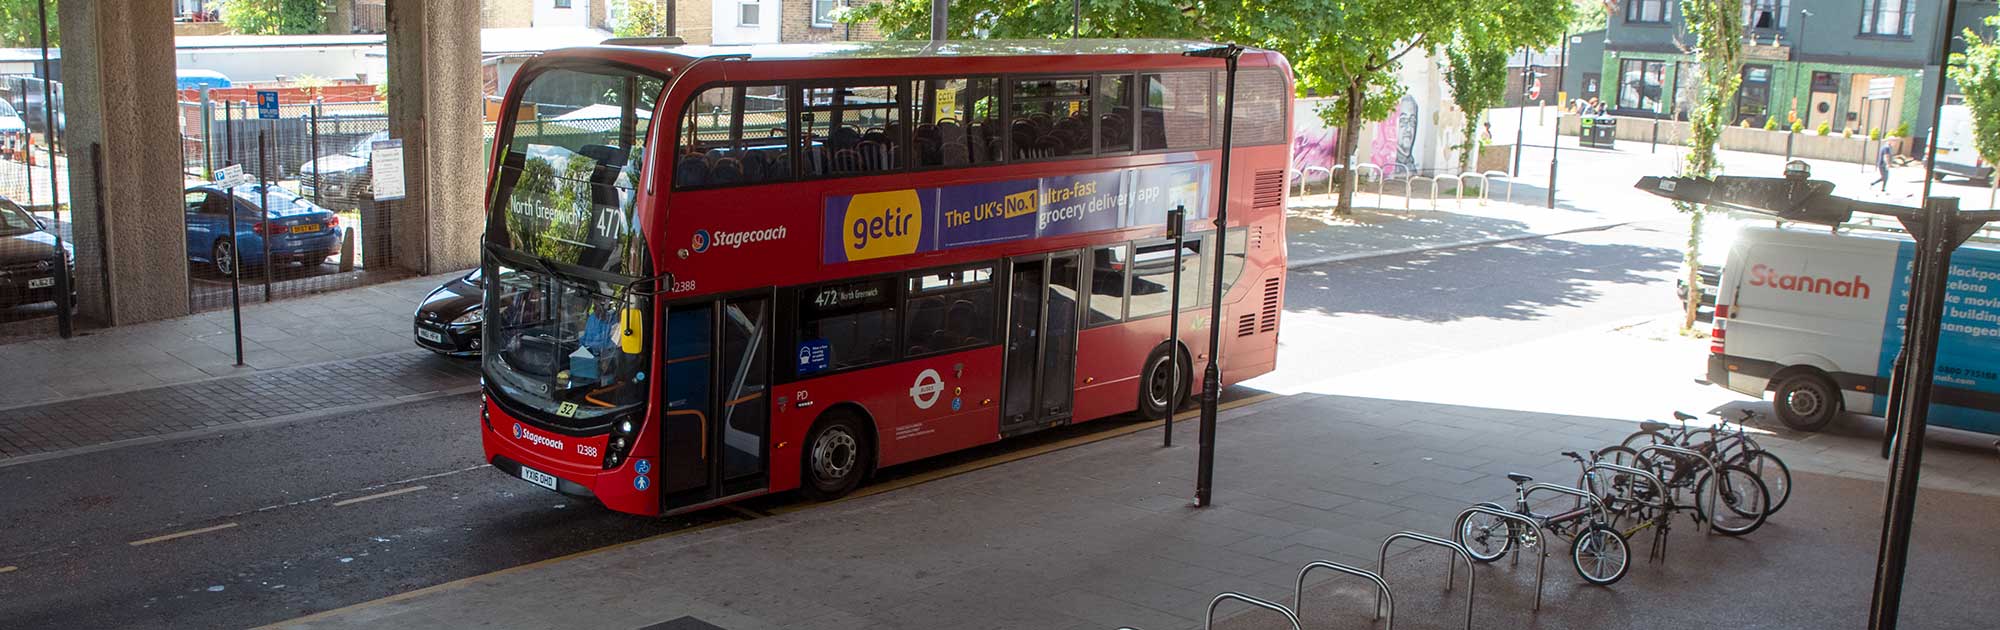 472 bus